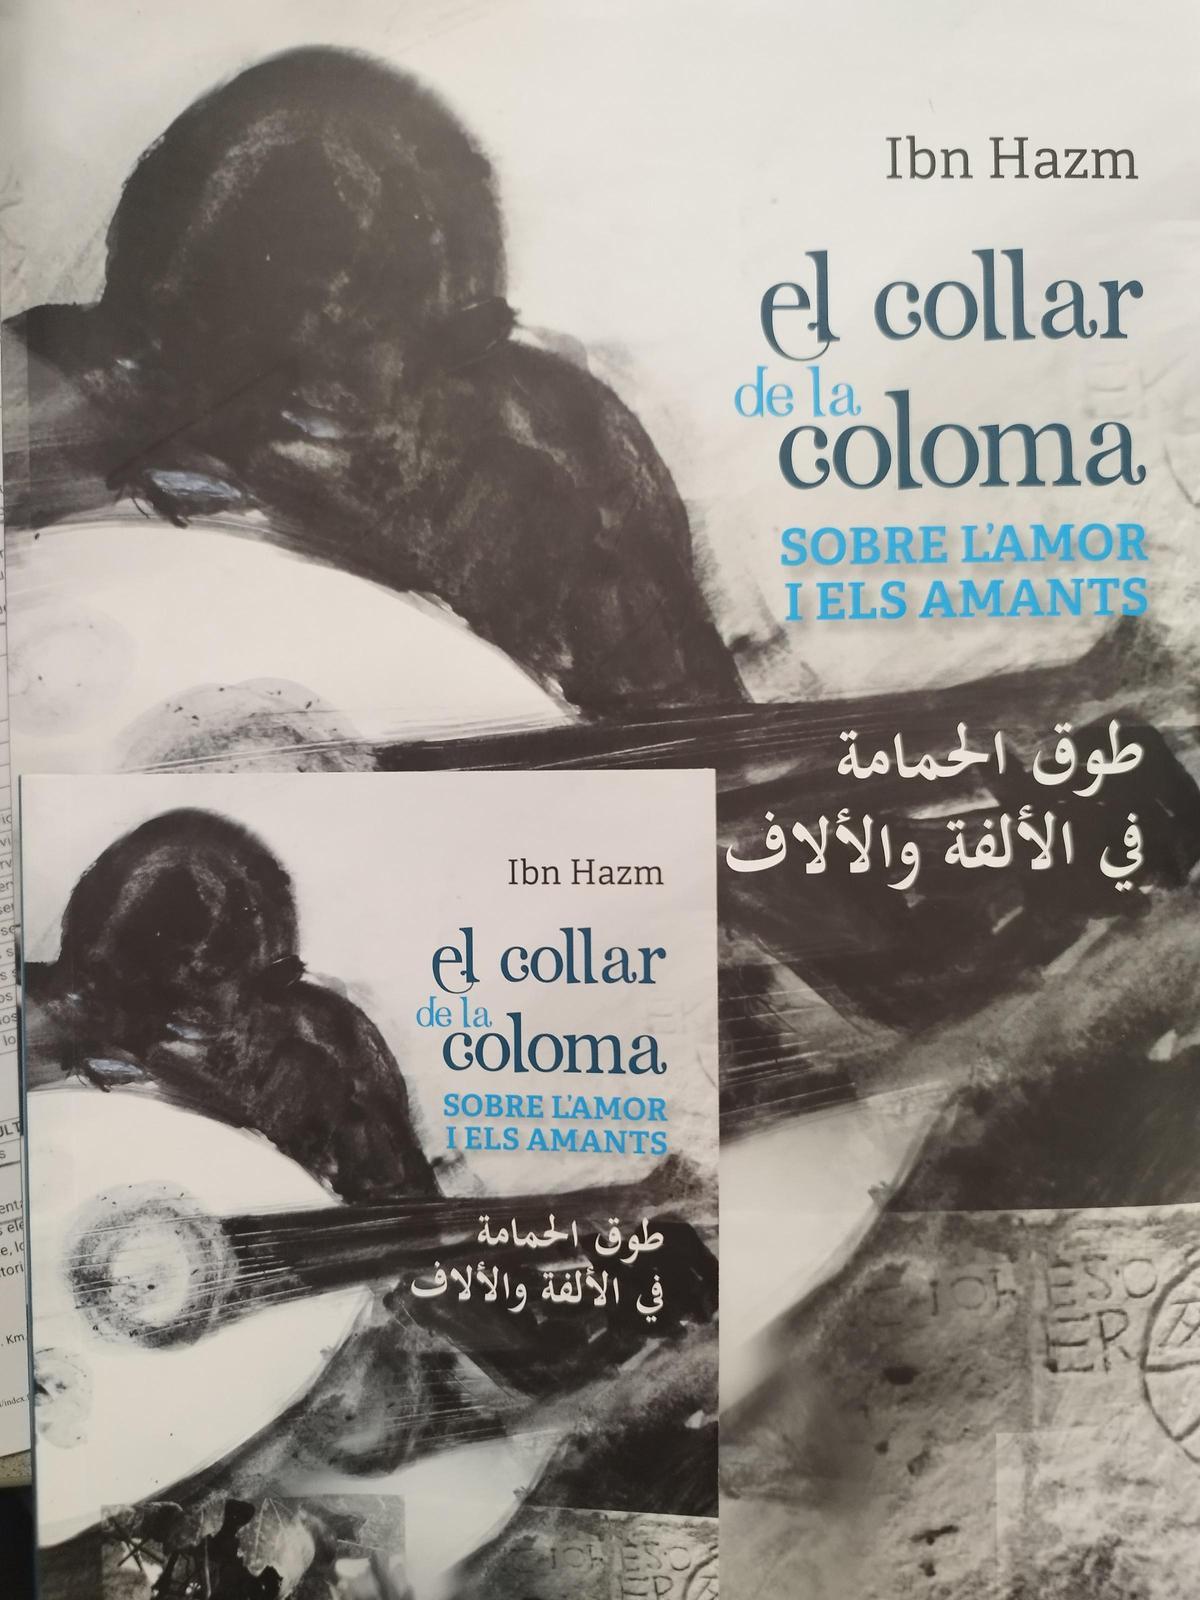 El volumen bibliófilo de la traducción editada por Amics de la Costera, junto con el libro de bolsillo.